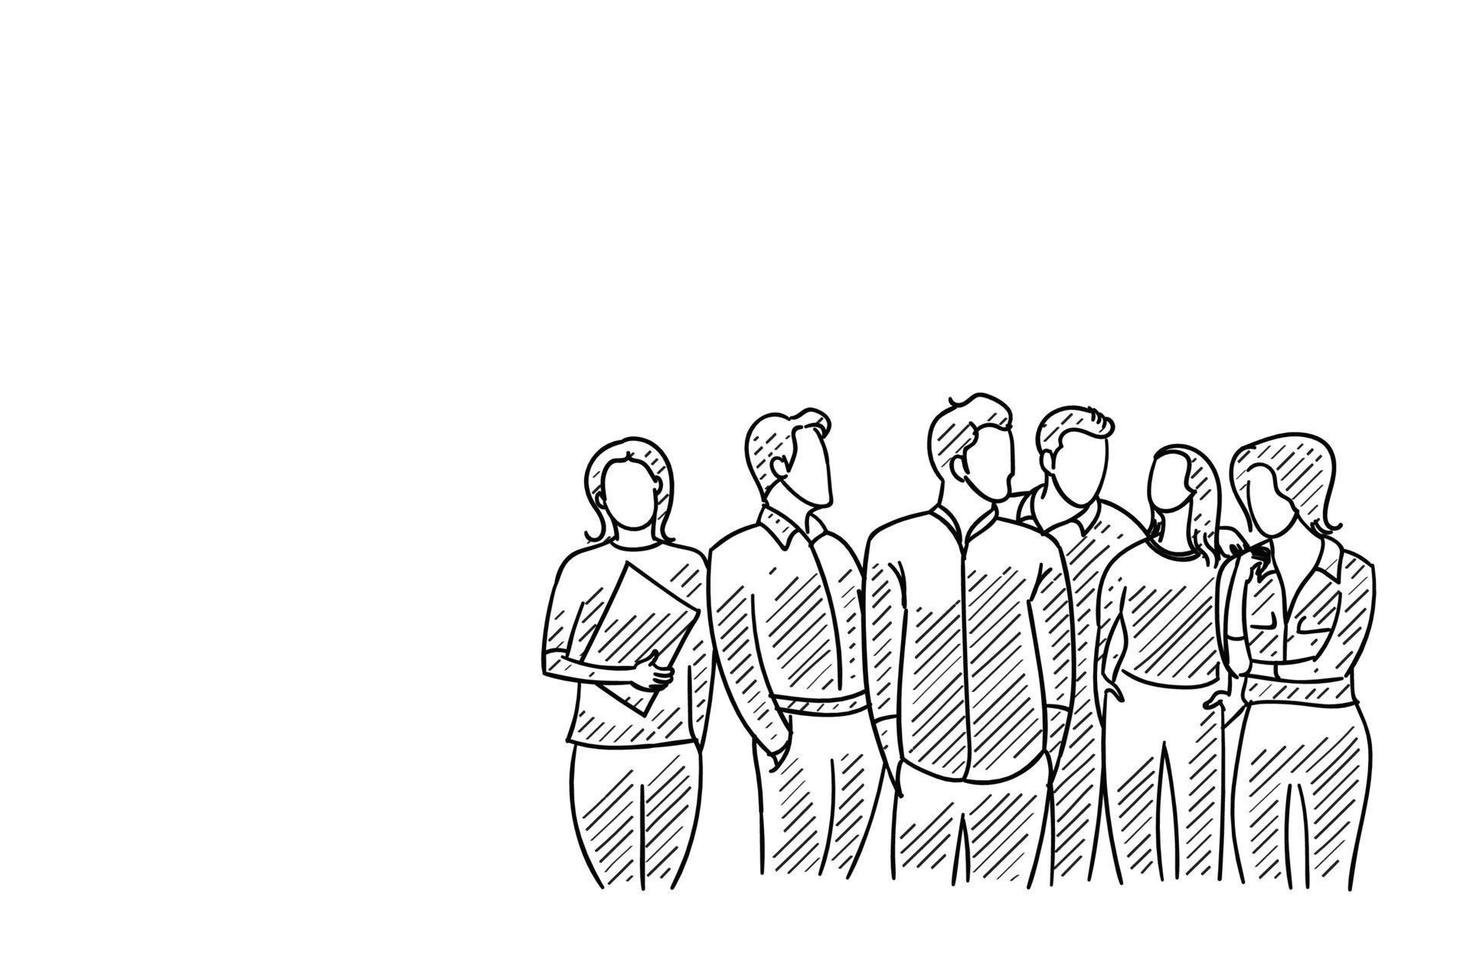 croquis de gens d'affaires hommes et femmes d'une entreprise en démarrage debout ensemble. conception d'illustration de personnage dessiné à la main. vecteur